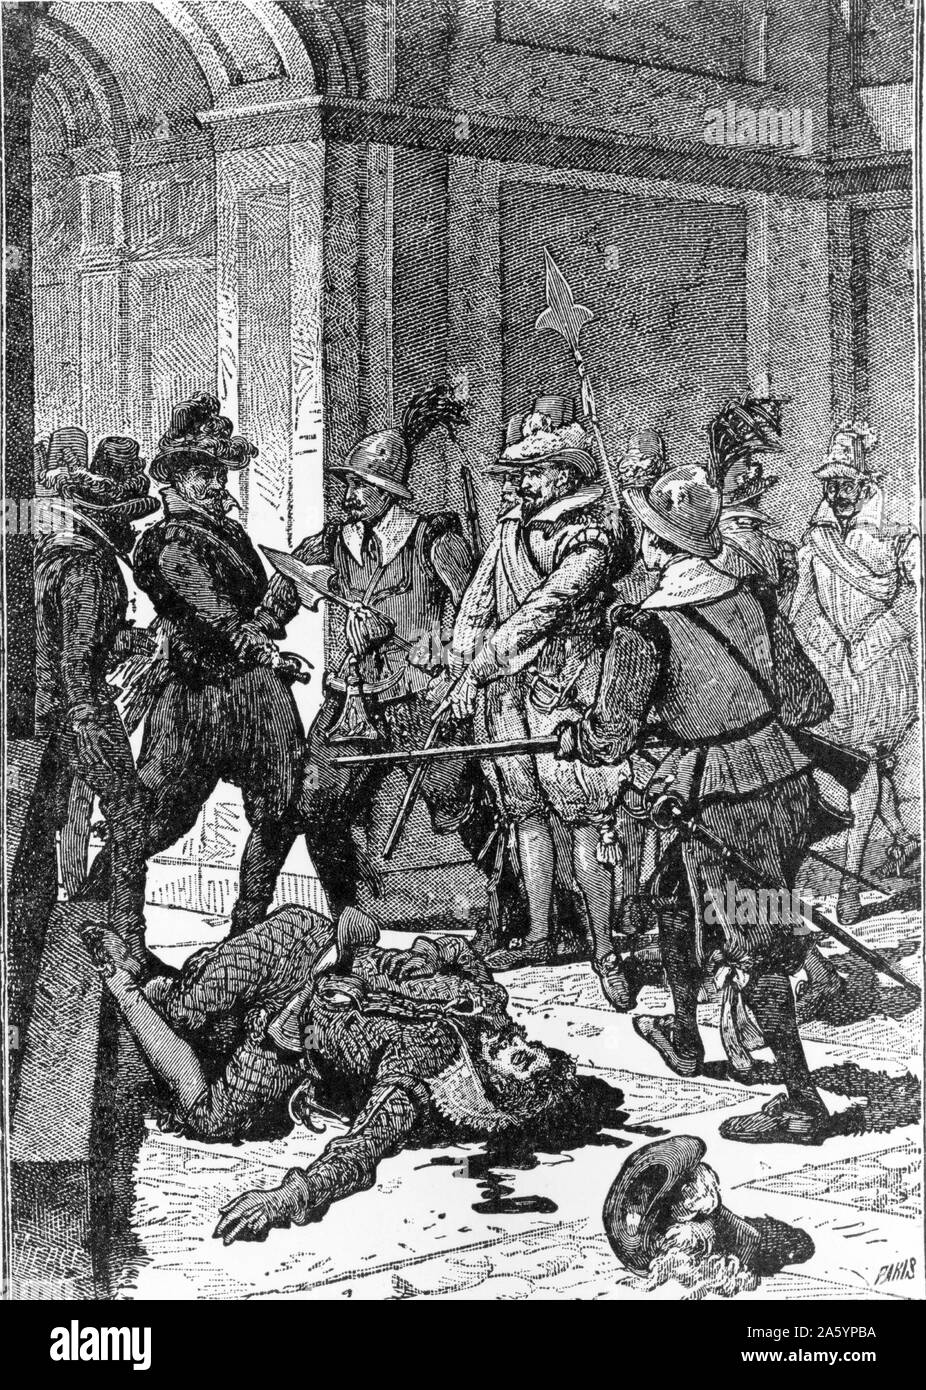 Illustration montrant la mort de Francisco Pizarro (1476-1541) conquistador espagnol qui a conquis l'Empire Inca. Datée 1891 Banque D'Images